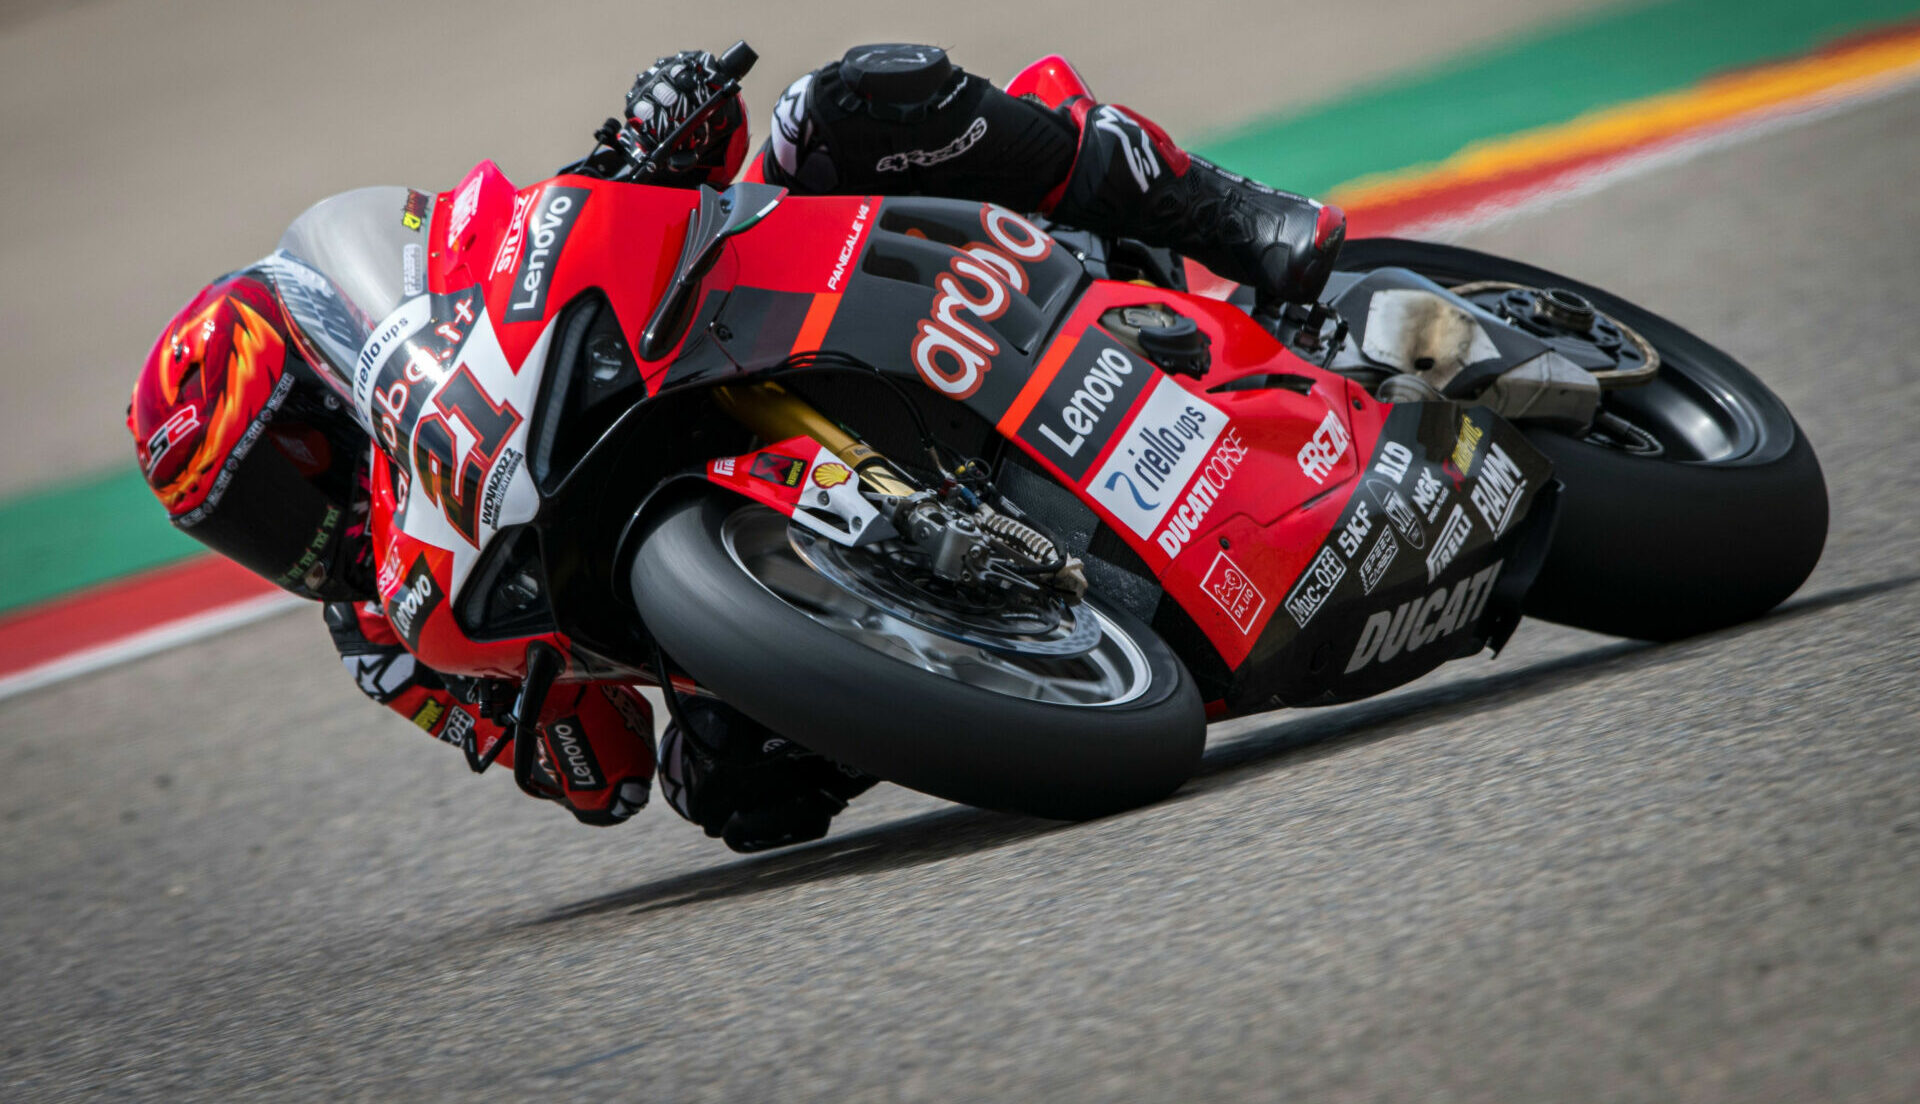 Michael Rinaldi (21). Photo courtesy Ducati.